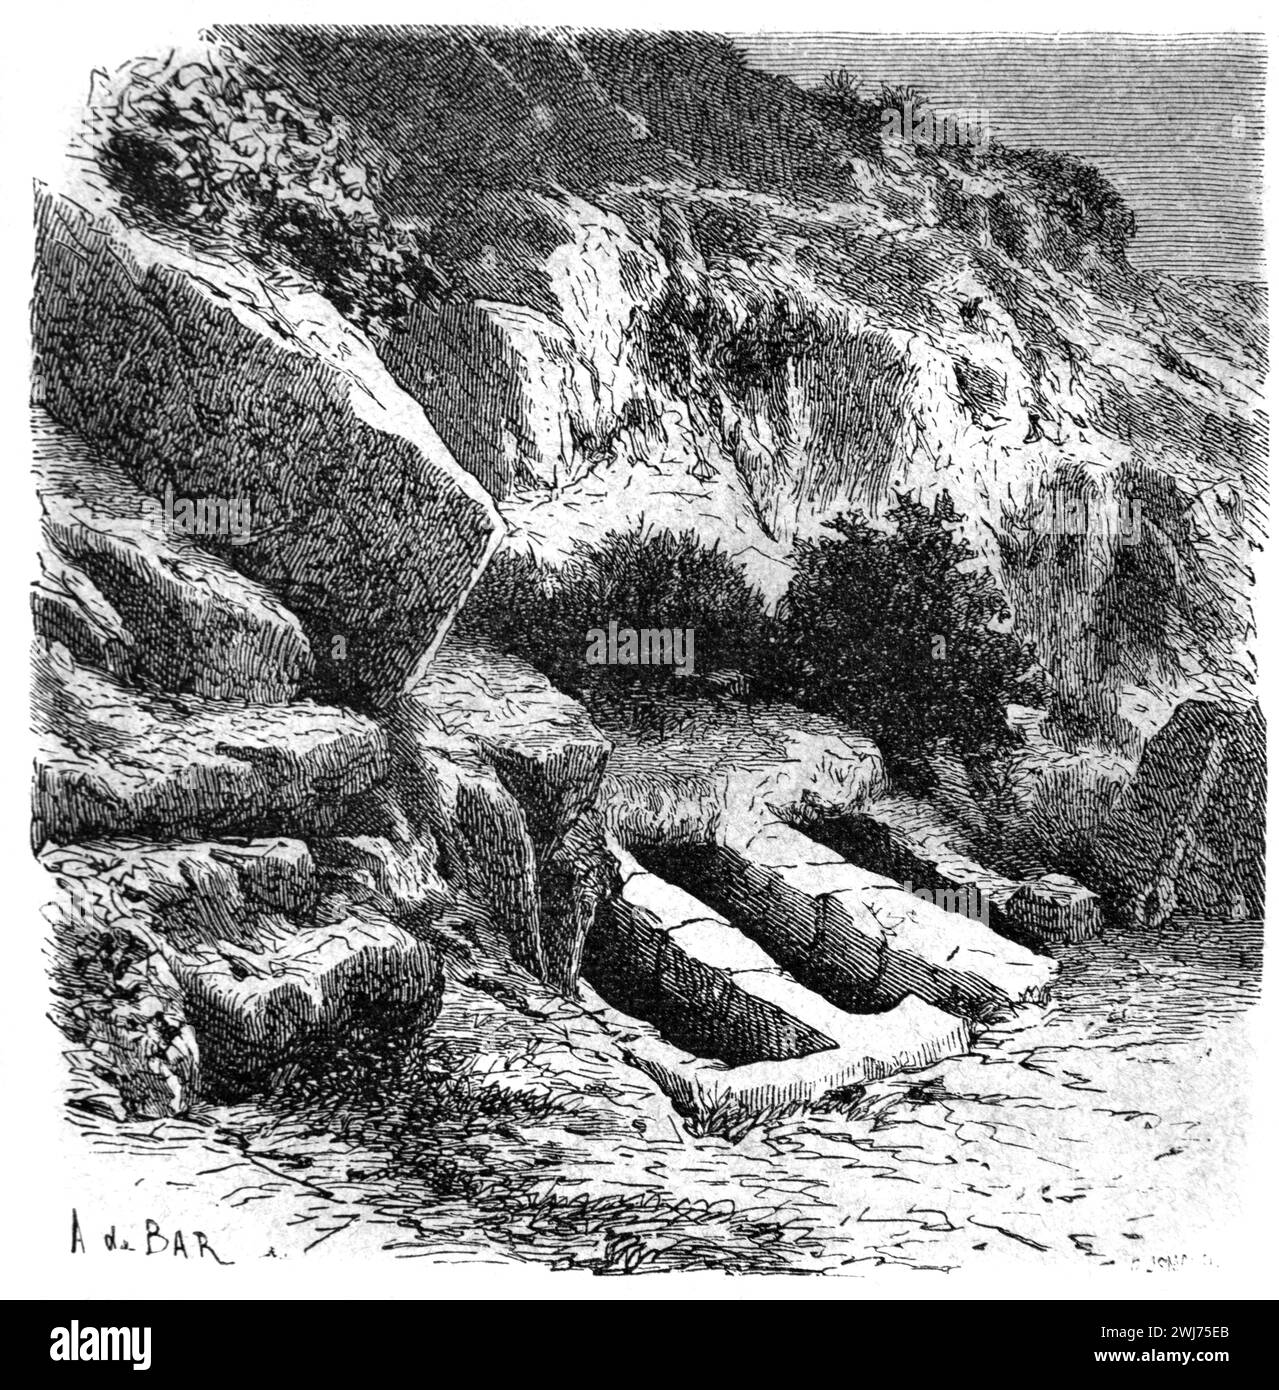 Tombes anciennes près de Byblos Liban. Gravure vintage ou historique ou illustration 1863 Banque D'Images